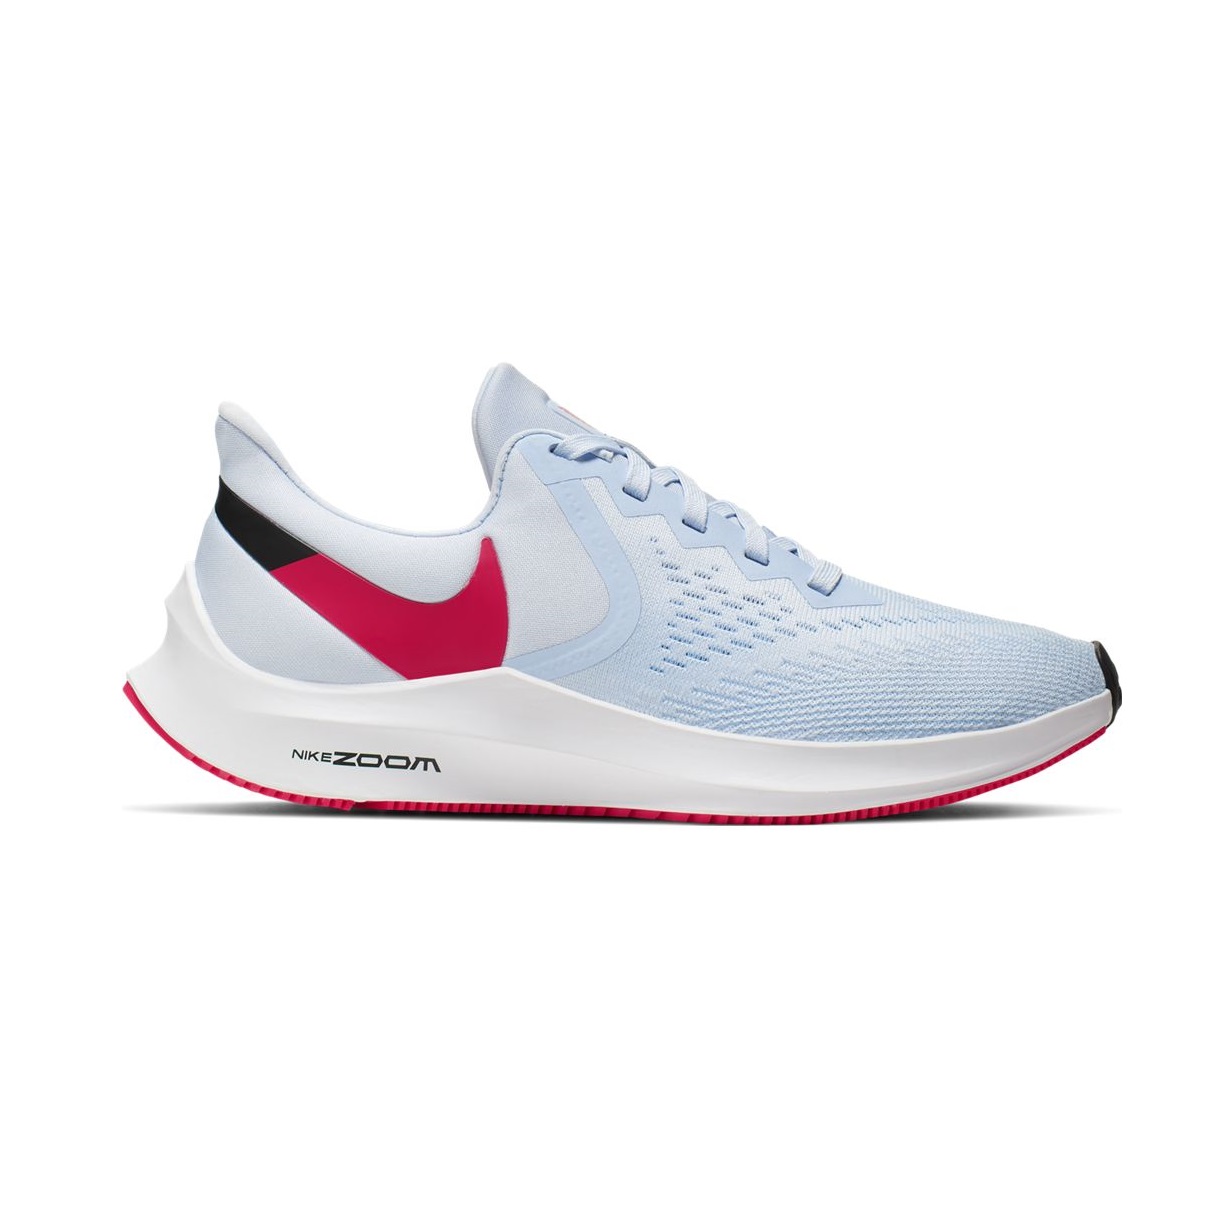 Zapatillas de running - Mujer - Nike Air Zoom Winflo 6 - | ferrersport.com | Tienda de deportes